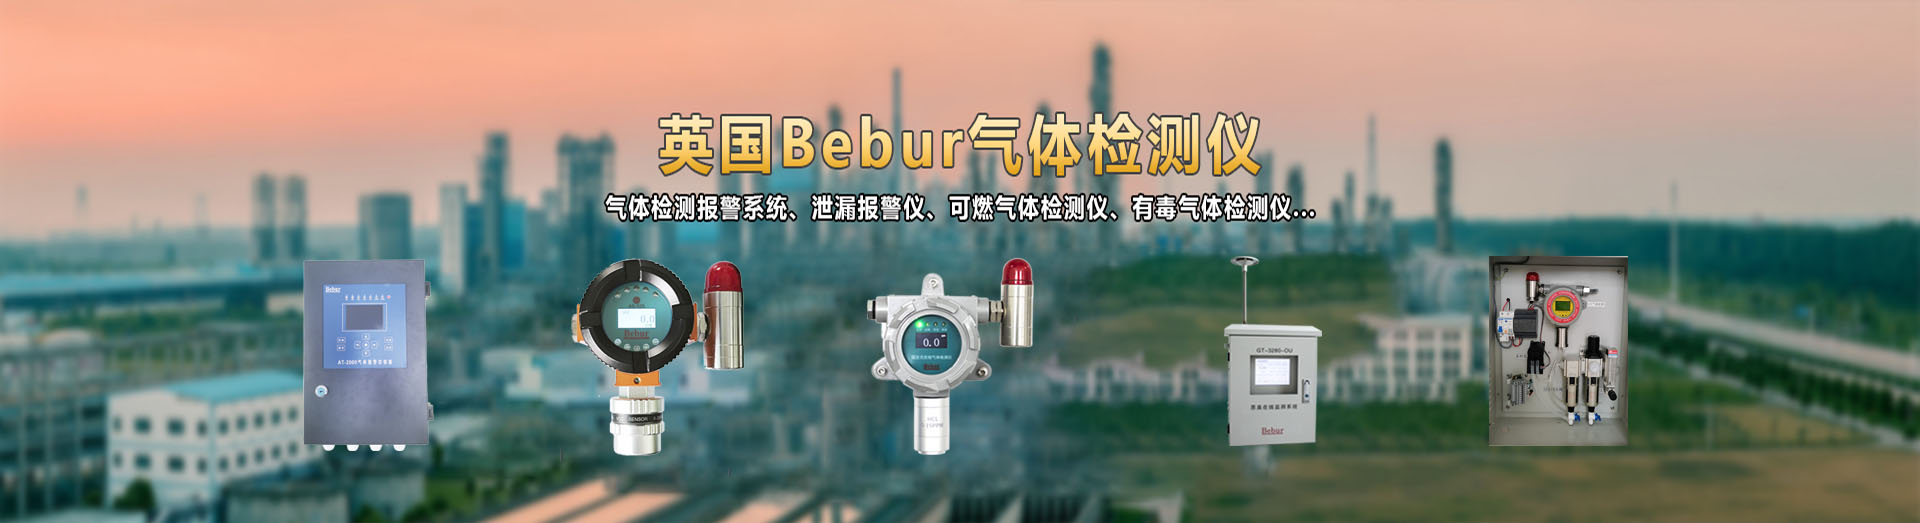 英国Bebur品牌便携式甲烷检测仪器系列产品